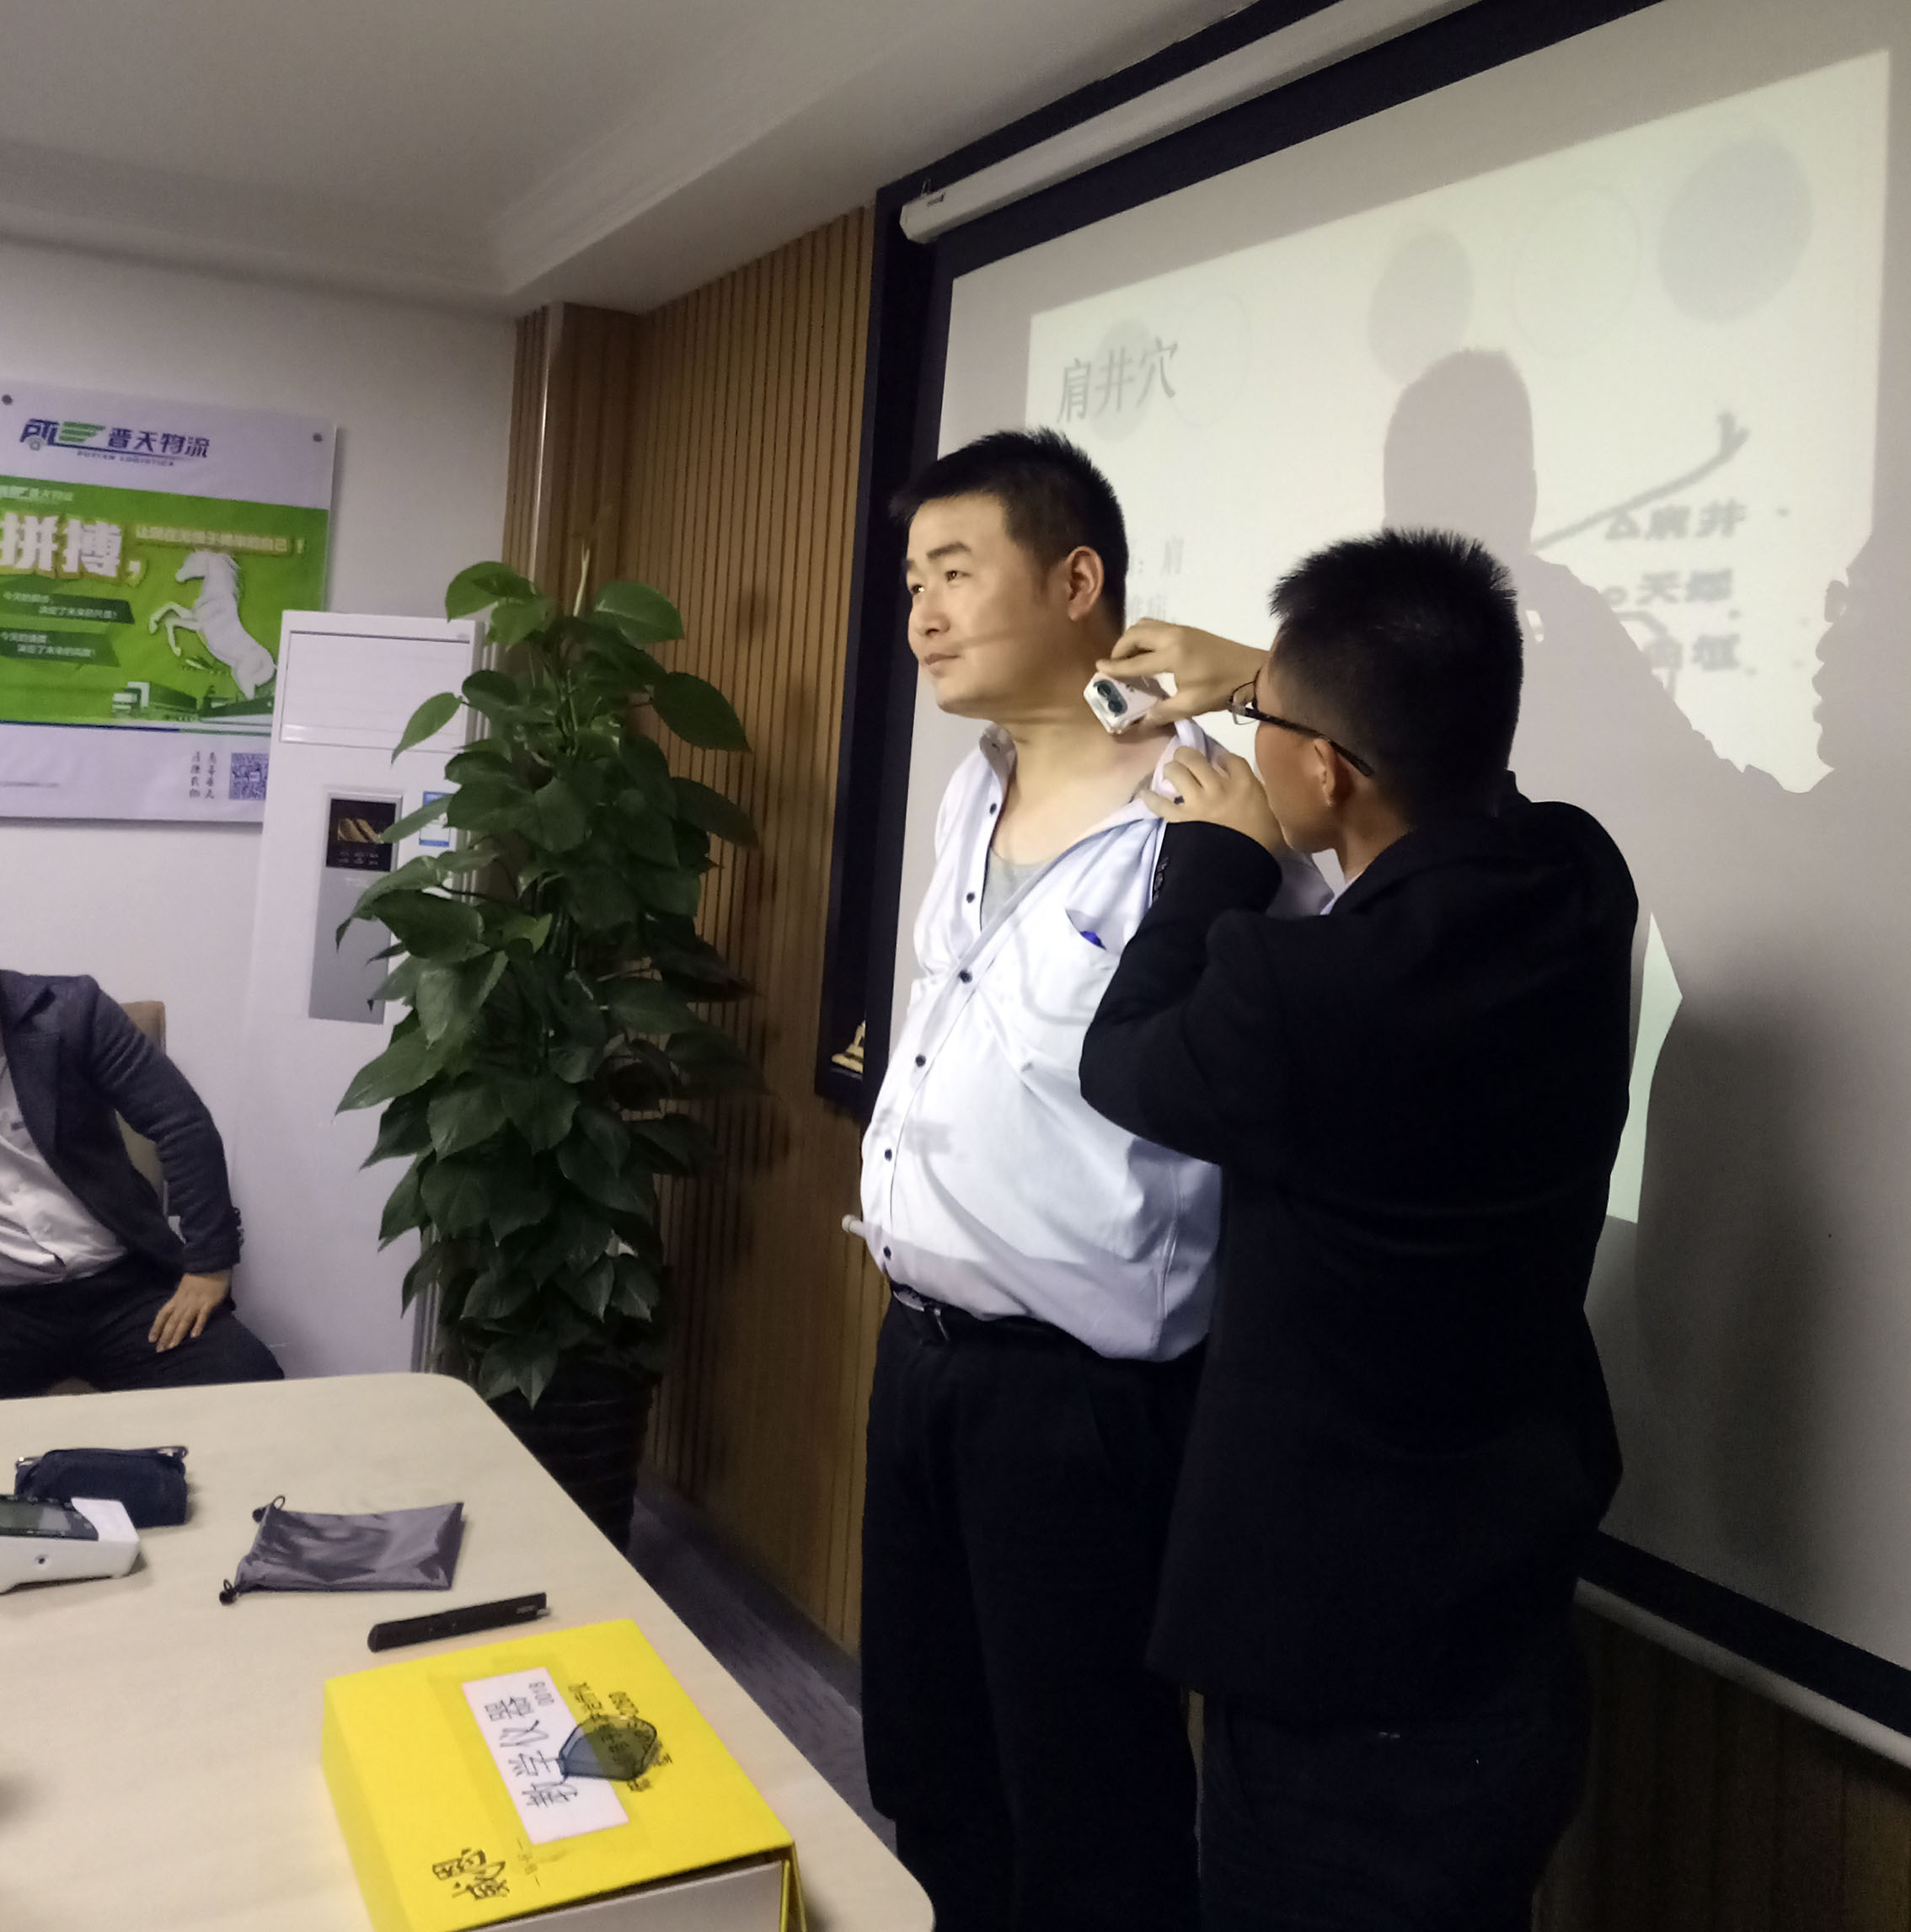 上海普天物流举办“紧急救护、健康知识”培训  模拟清除口腔杂物